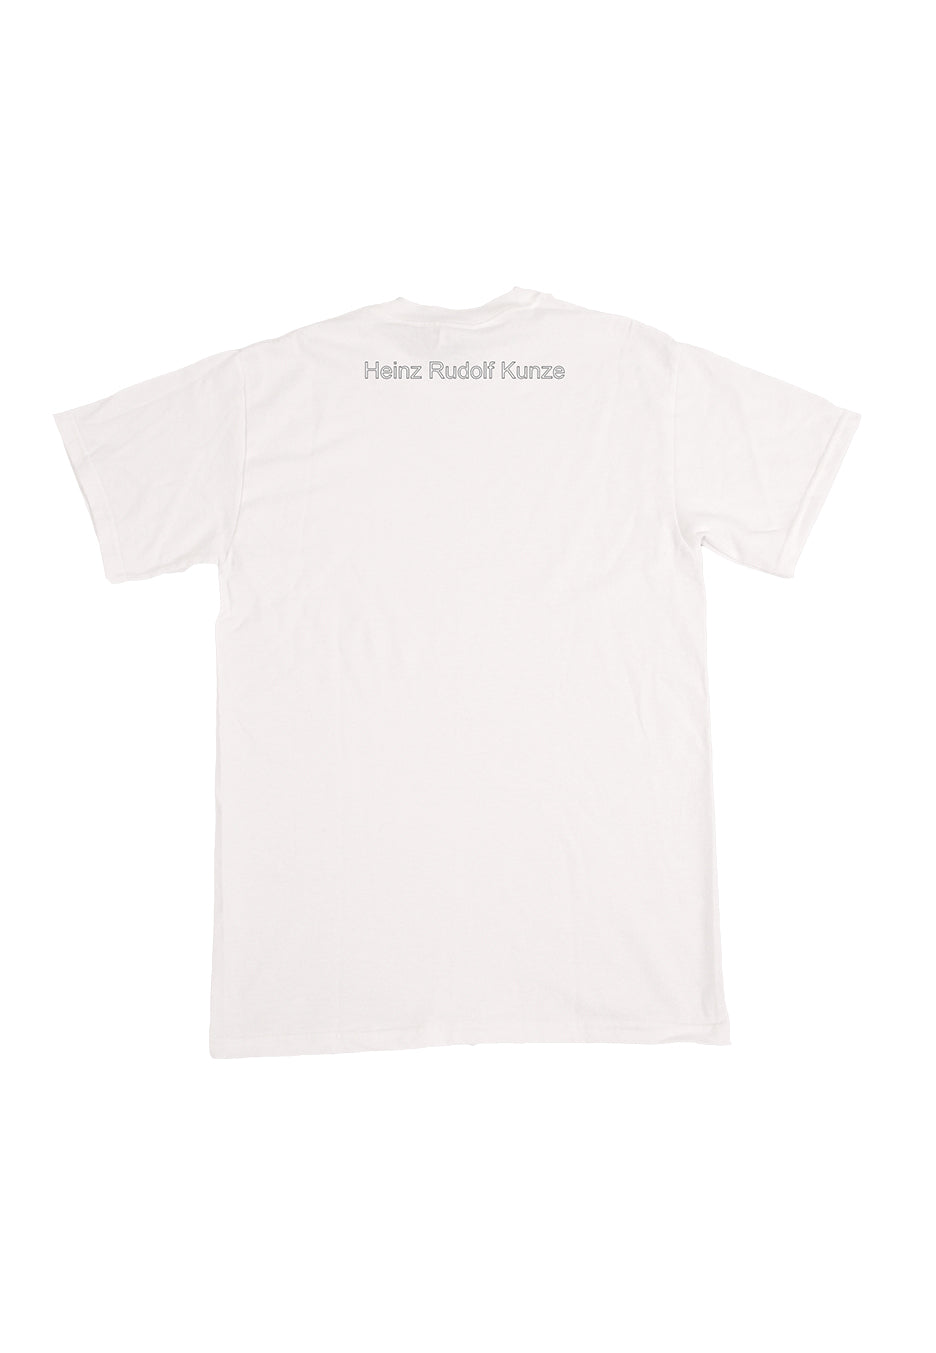 Heinz Rudolf Kunze - Unruhestifter White - T-Shirt